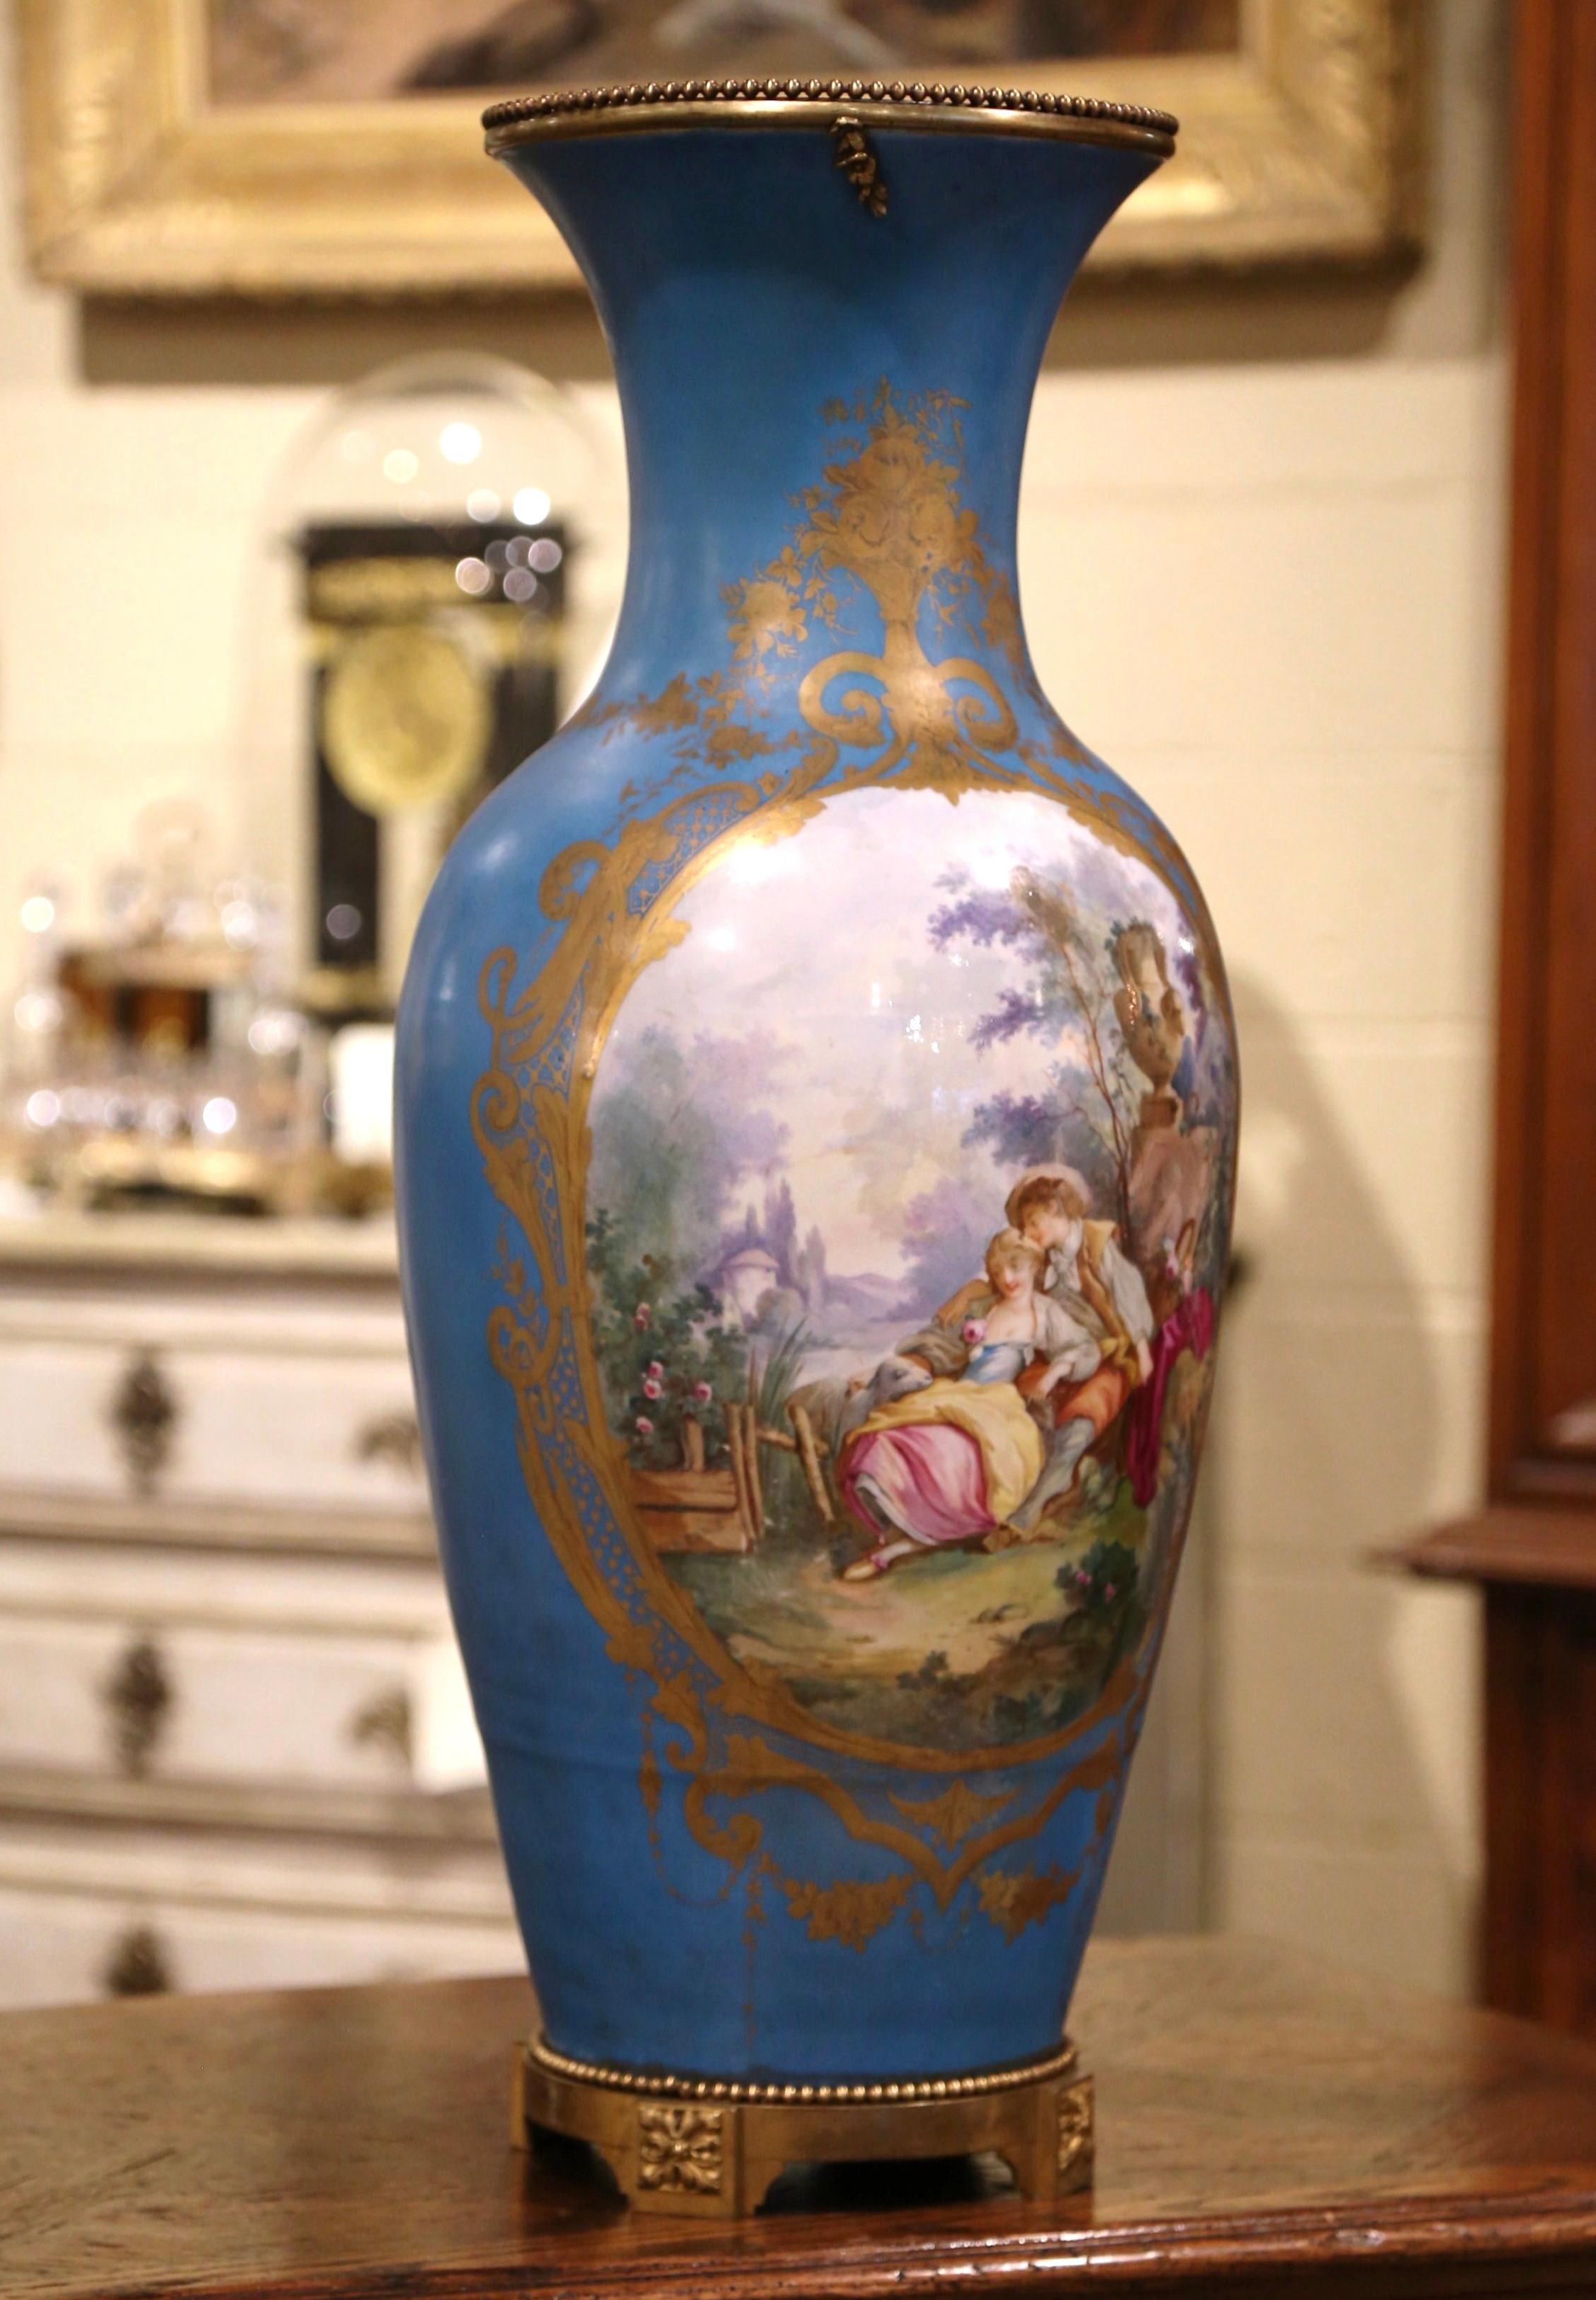 Ce vase monumental de Louis XVI Sèvres a été créé à Paris, en France, vers 1860. Posé sur une base en bronze, ce grand récipient en porcelaine présente une scène romantique peinte à la main à la manière de Boucher, avec un gentleman faisant la cour